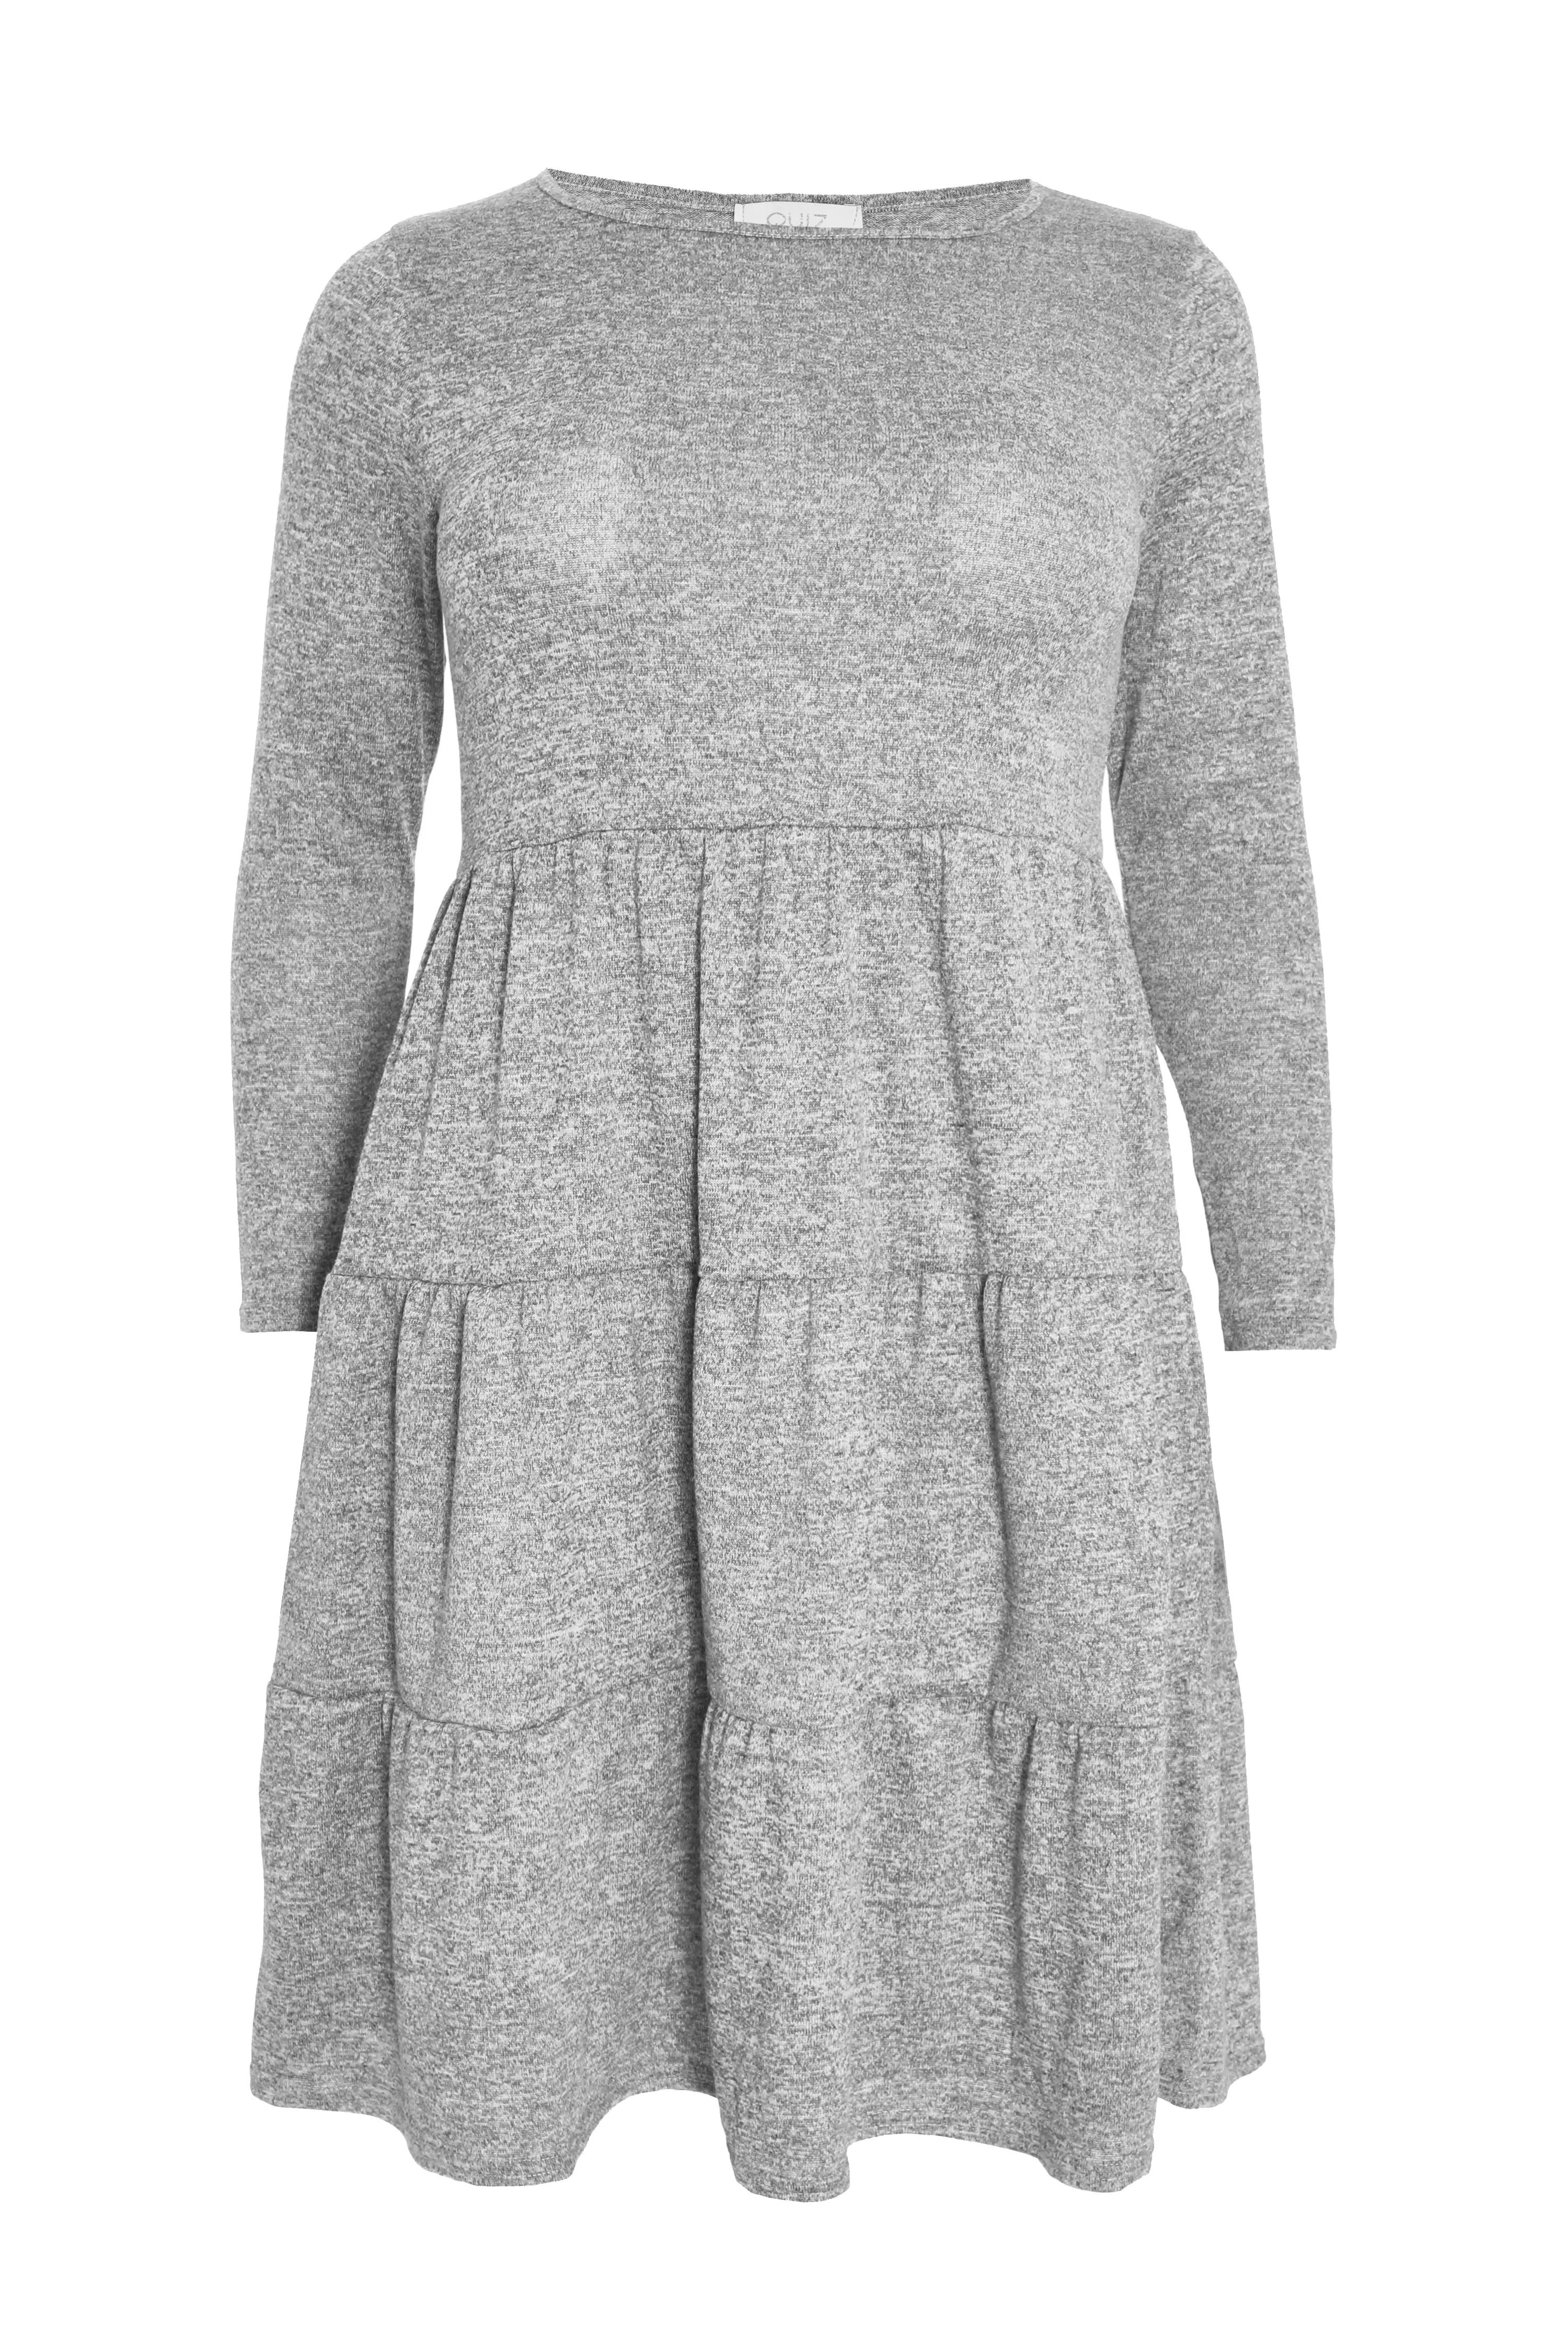 Curve Grey Tired Mini Dress